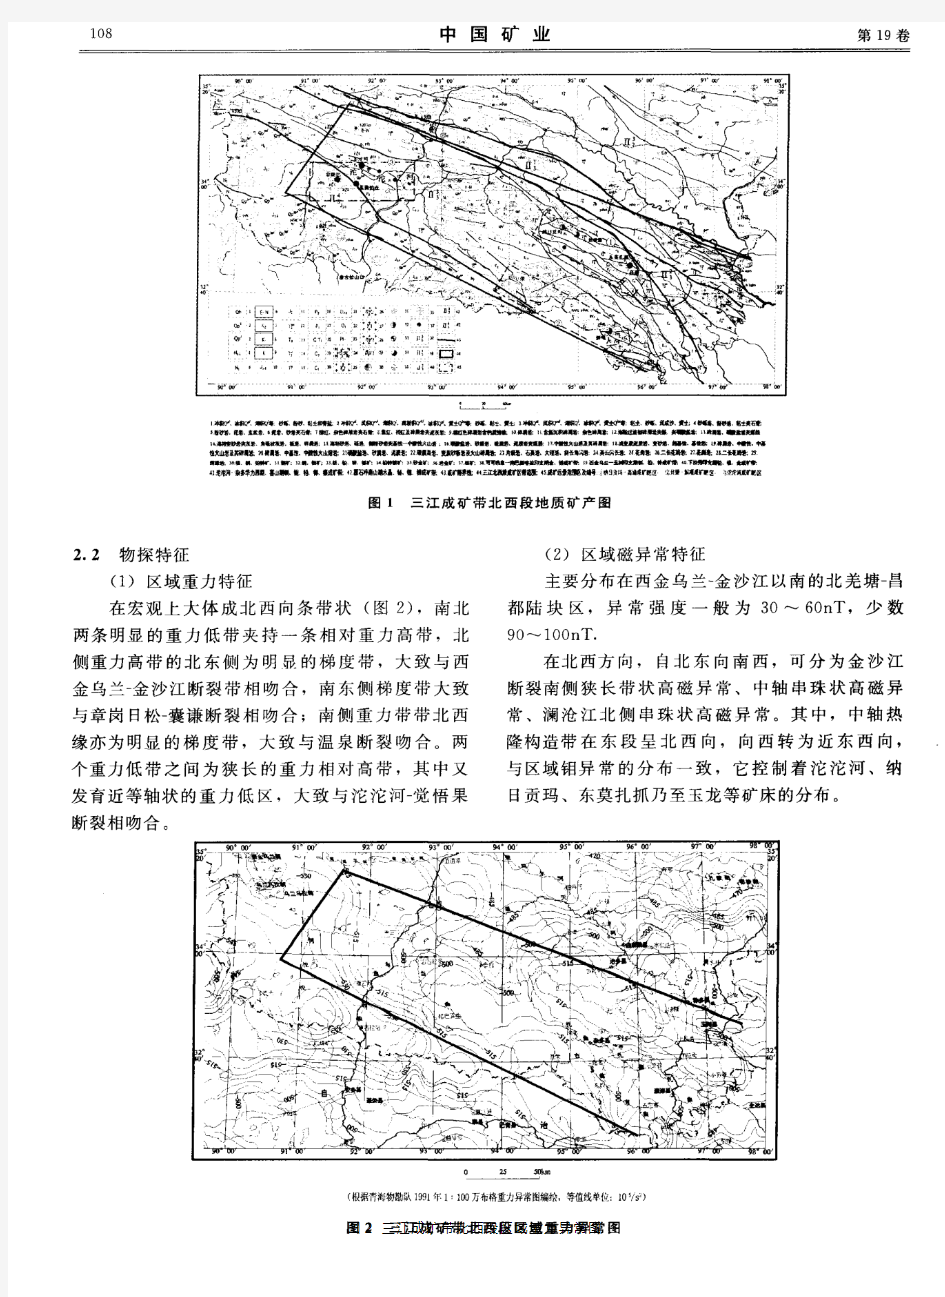 青海南部三江北西段主要矿带铜多金属矿产特征及找矿潜力分析